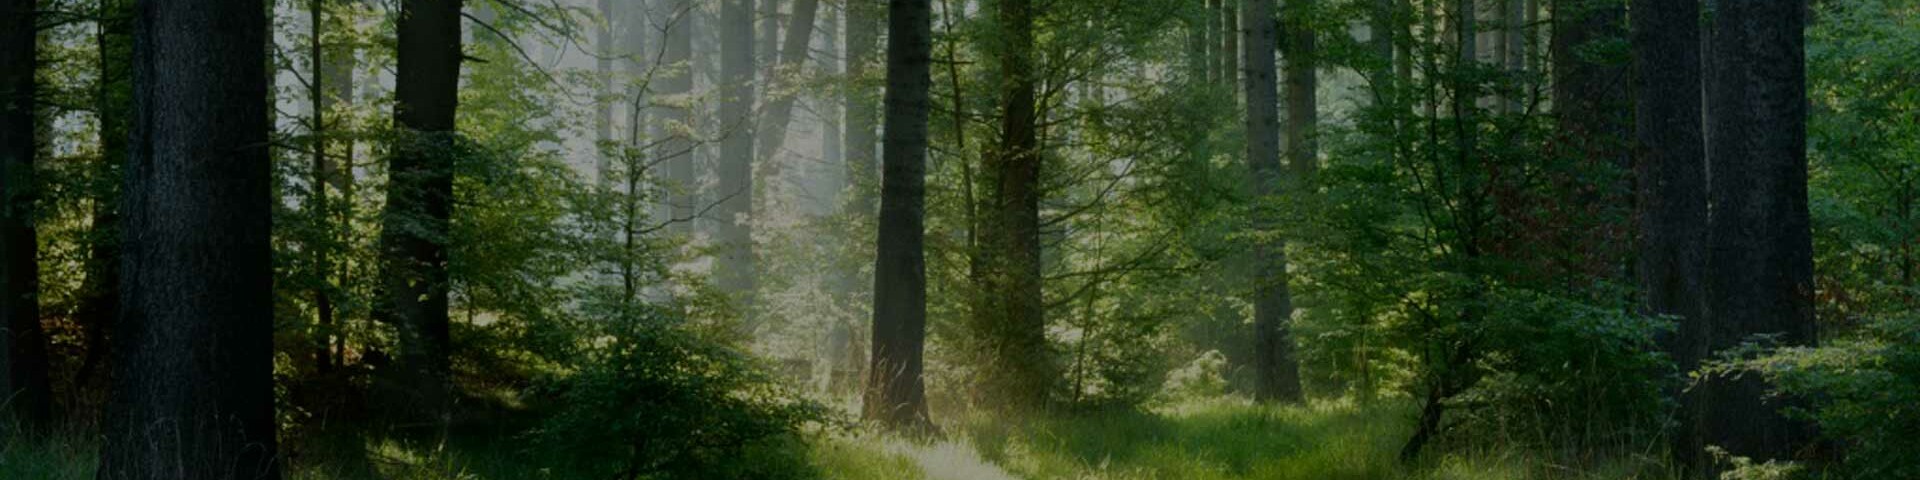 Sonnenstrahlen fallen durch einen grasgrünen Wald